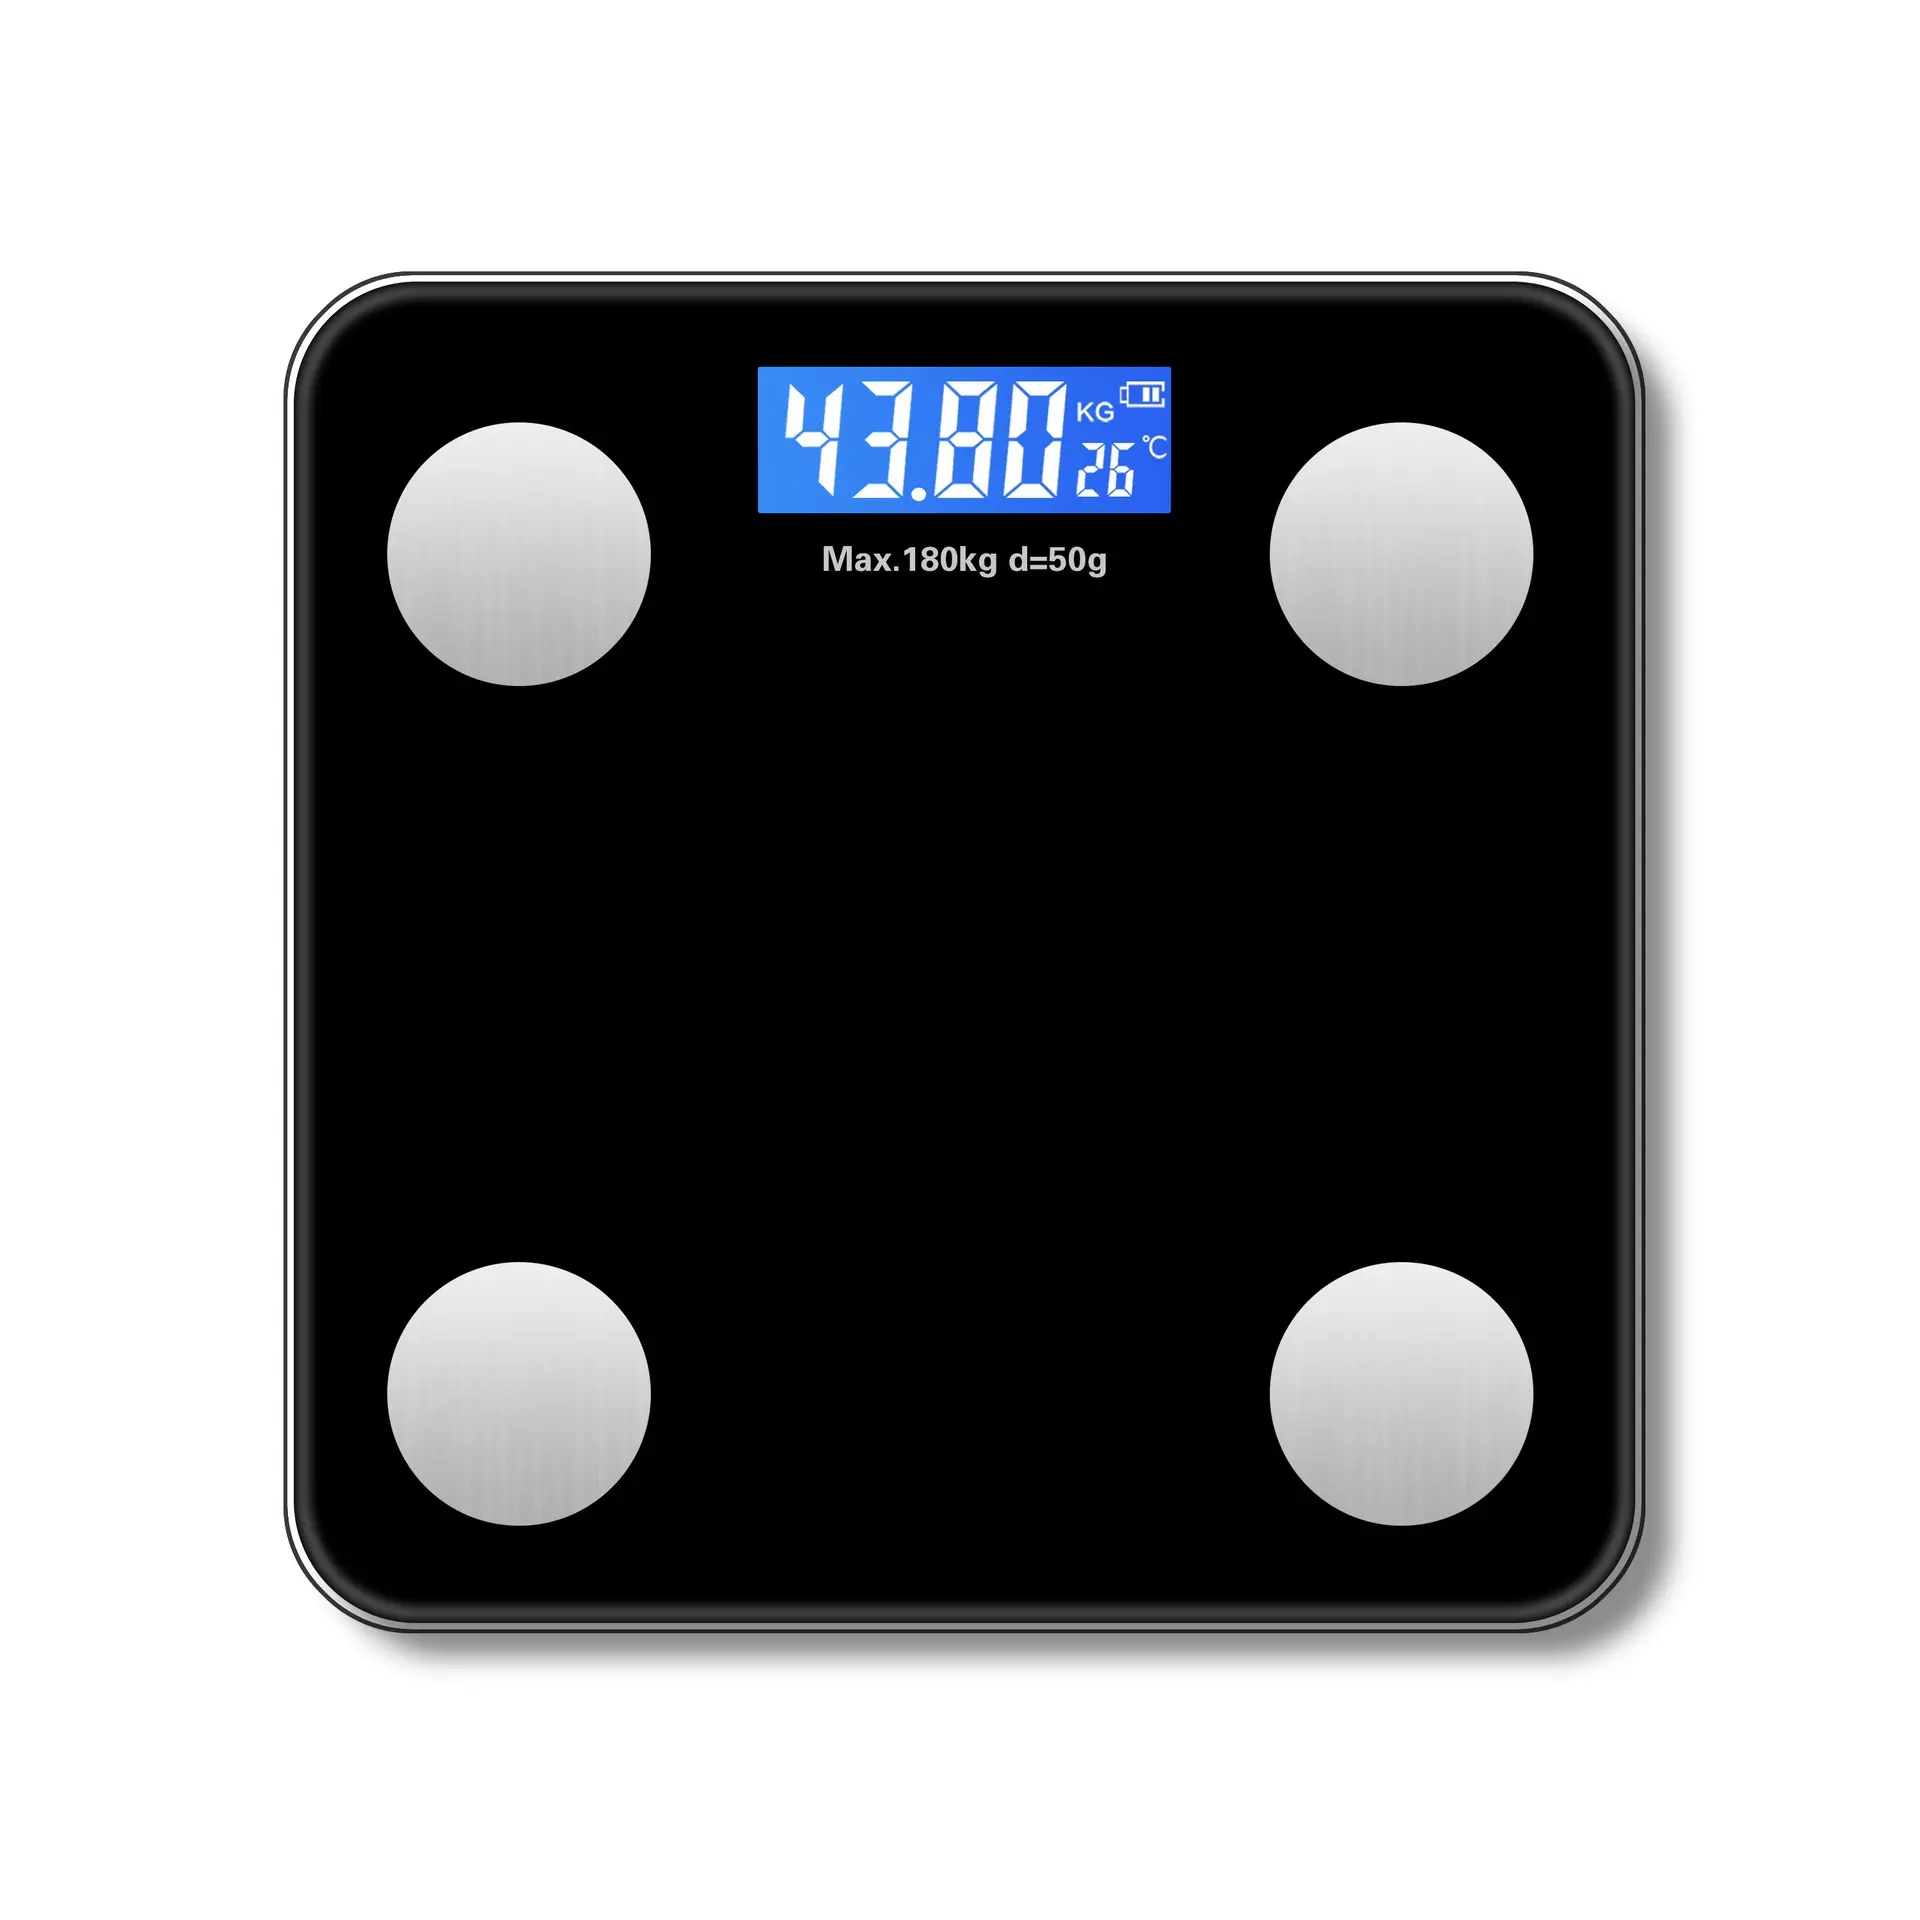 Commercio all'ingrosso di pesatura del grasso del corpo bilancia digitale Usb ricarica Smart bilance per il peso del corpo con App